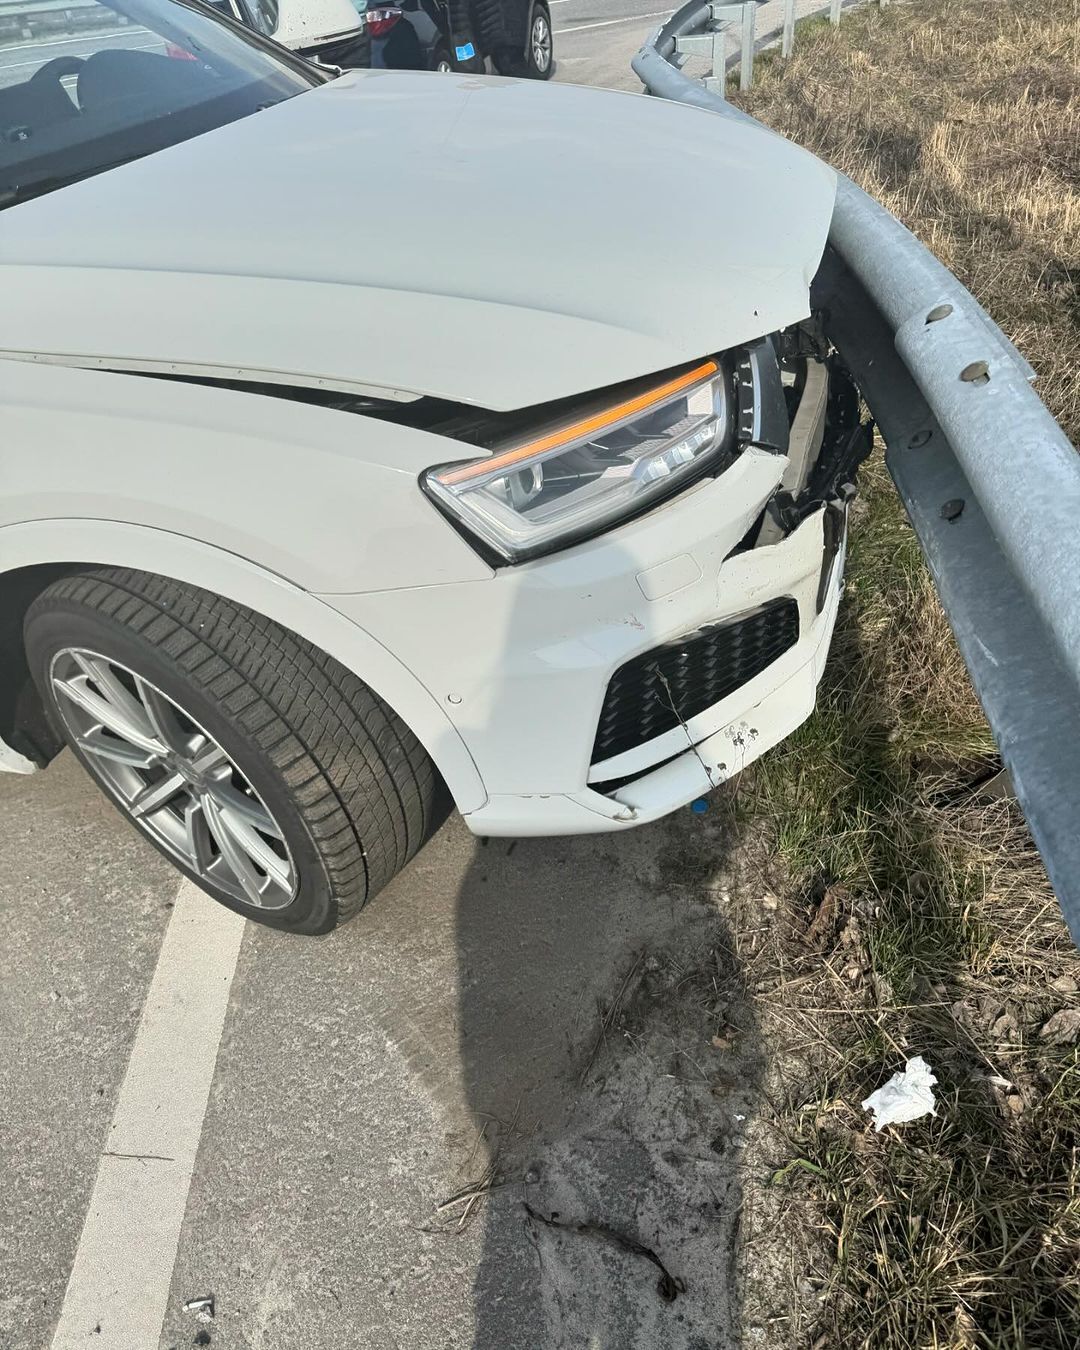 "Мисс Украина Вселенная-2021" Анна Неплях попала в серьезное ДТП и показала разбитое авто. Фото